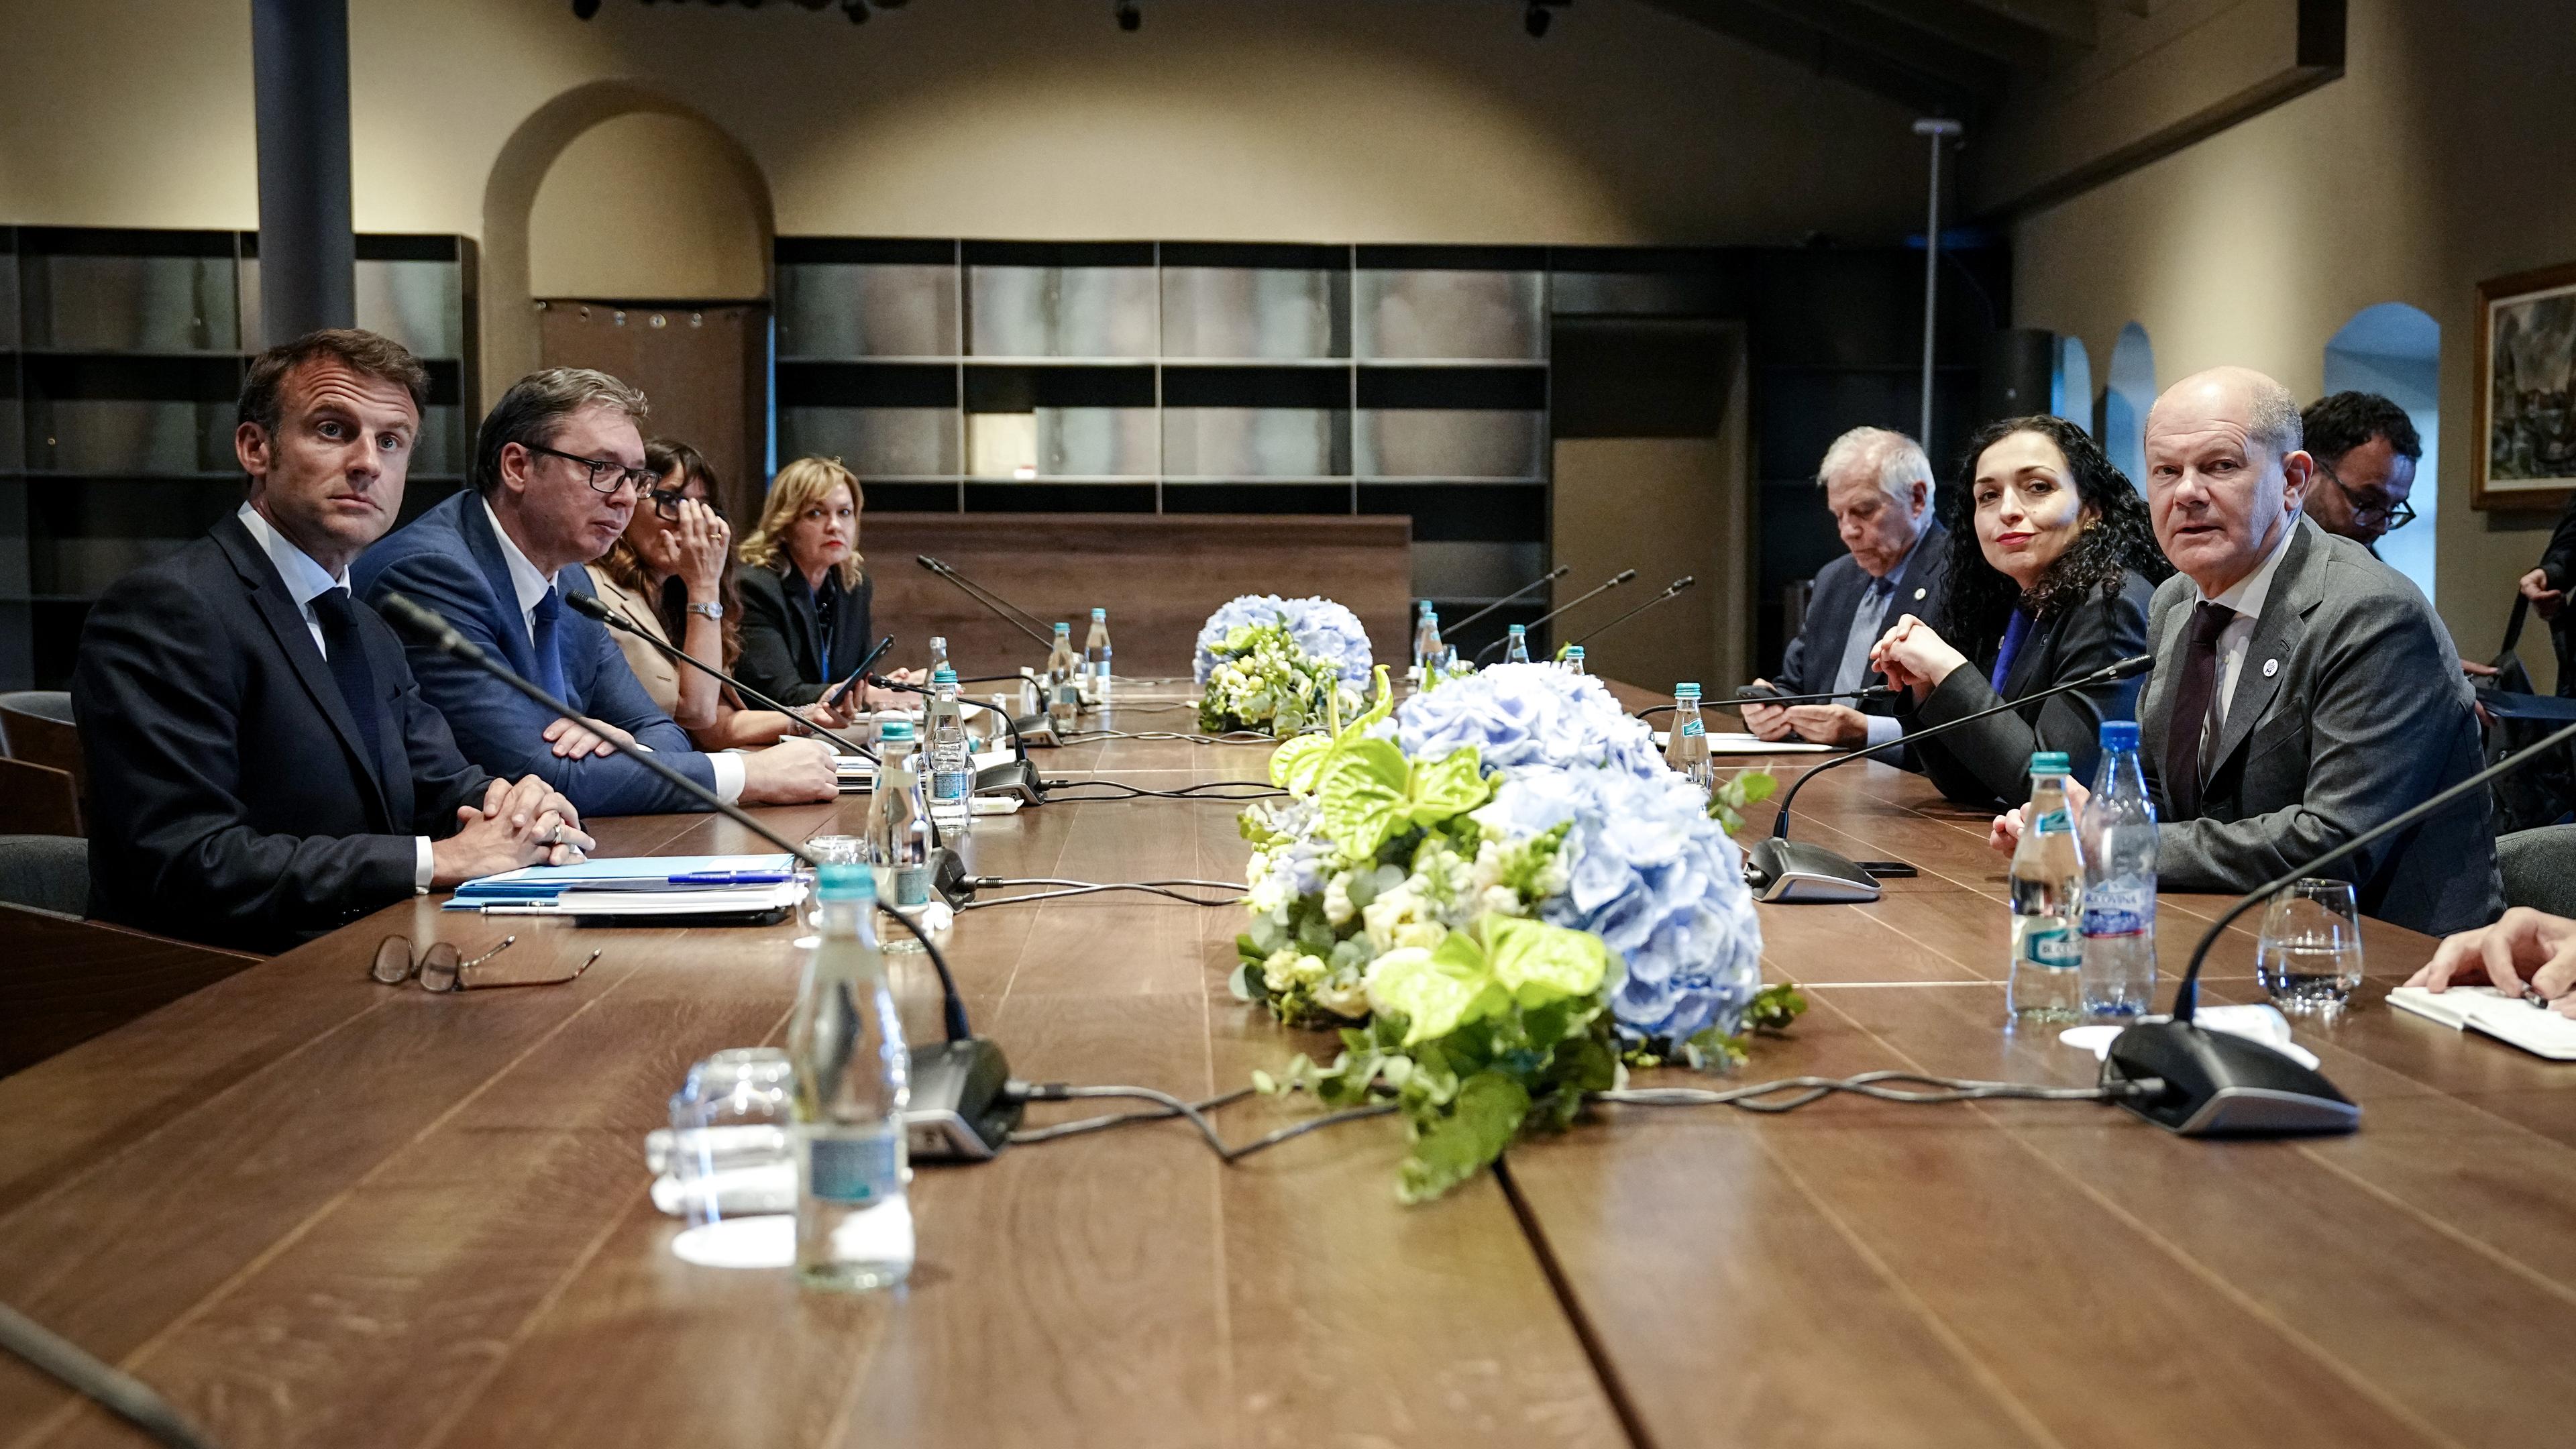 Zu sehen sind europäische Regierungschefs - darunter Macron und Scholz - an einem Konferenztisch in Moldau. In der Tischmitte liegen Blumen. 